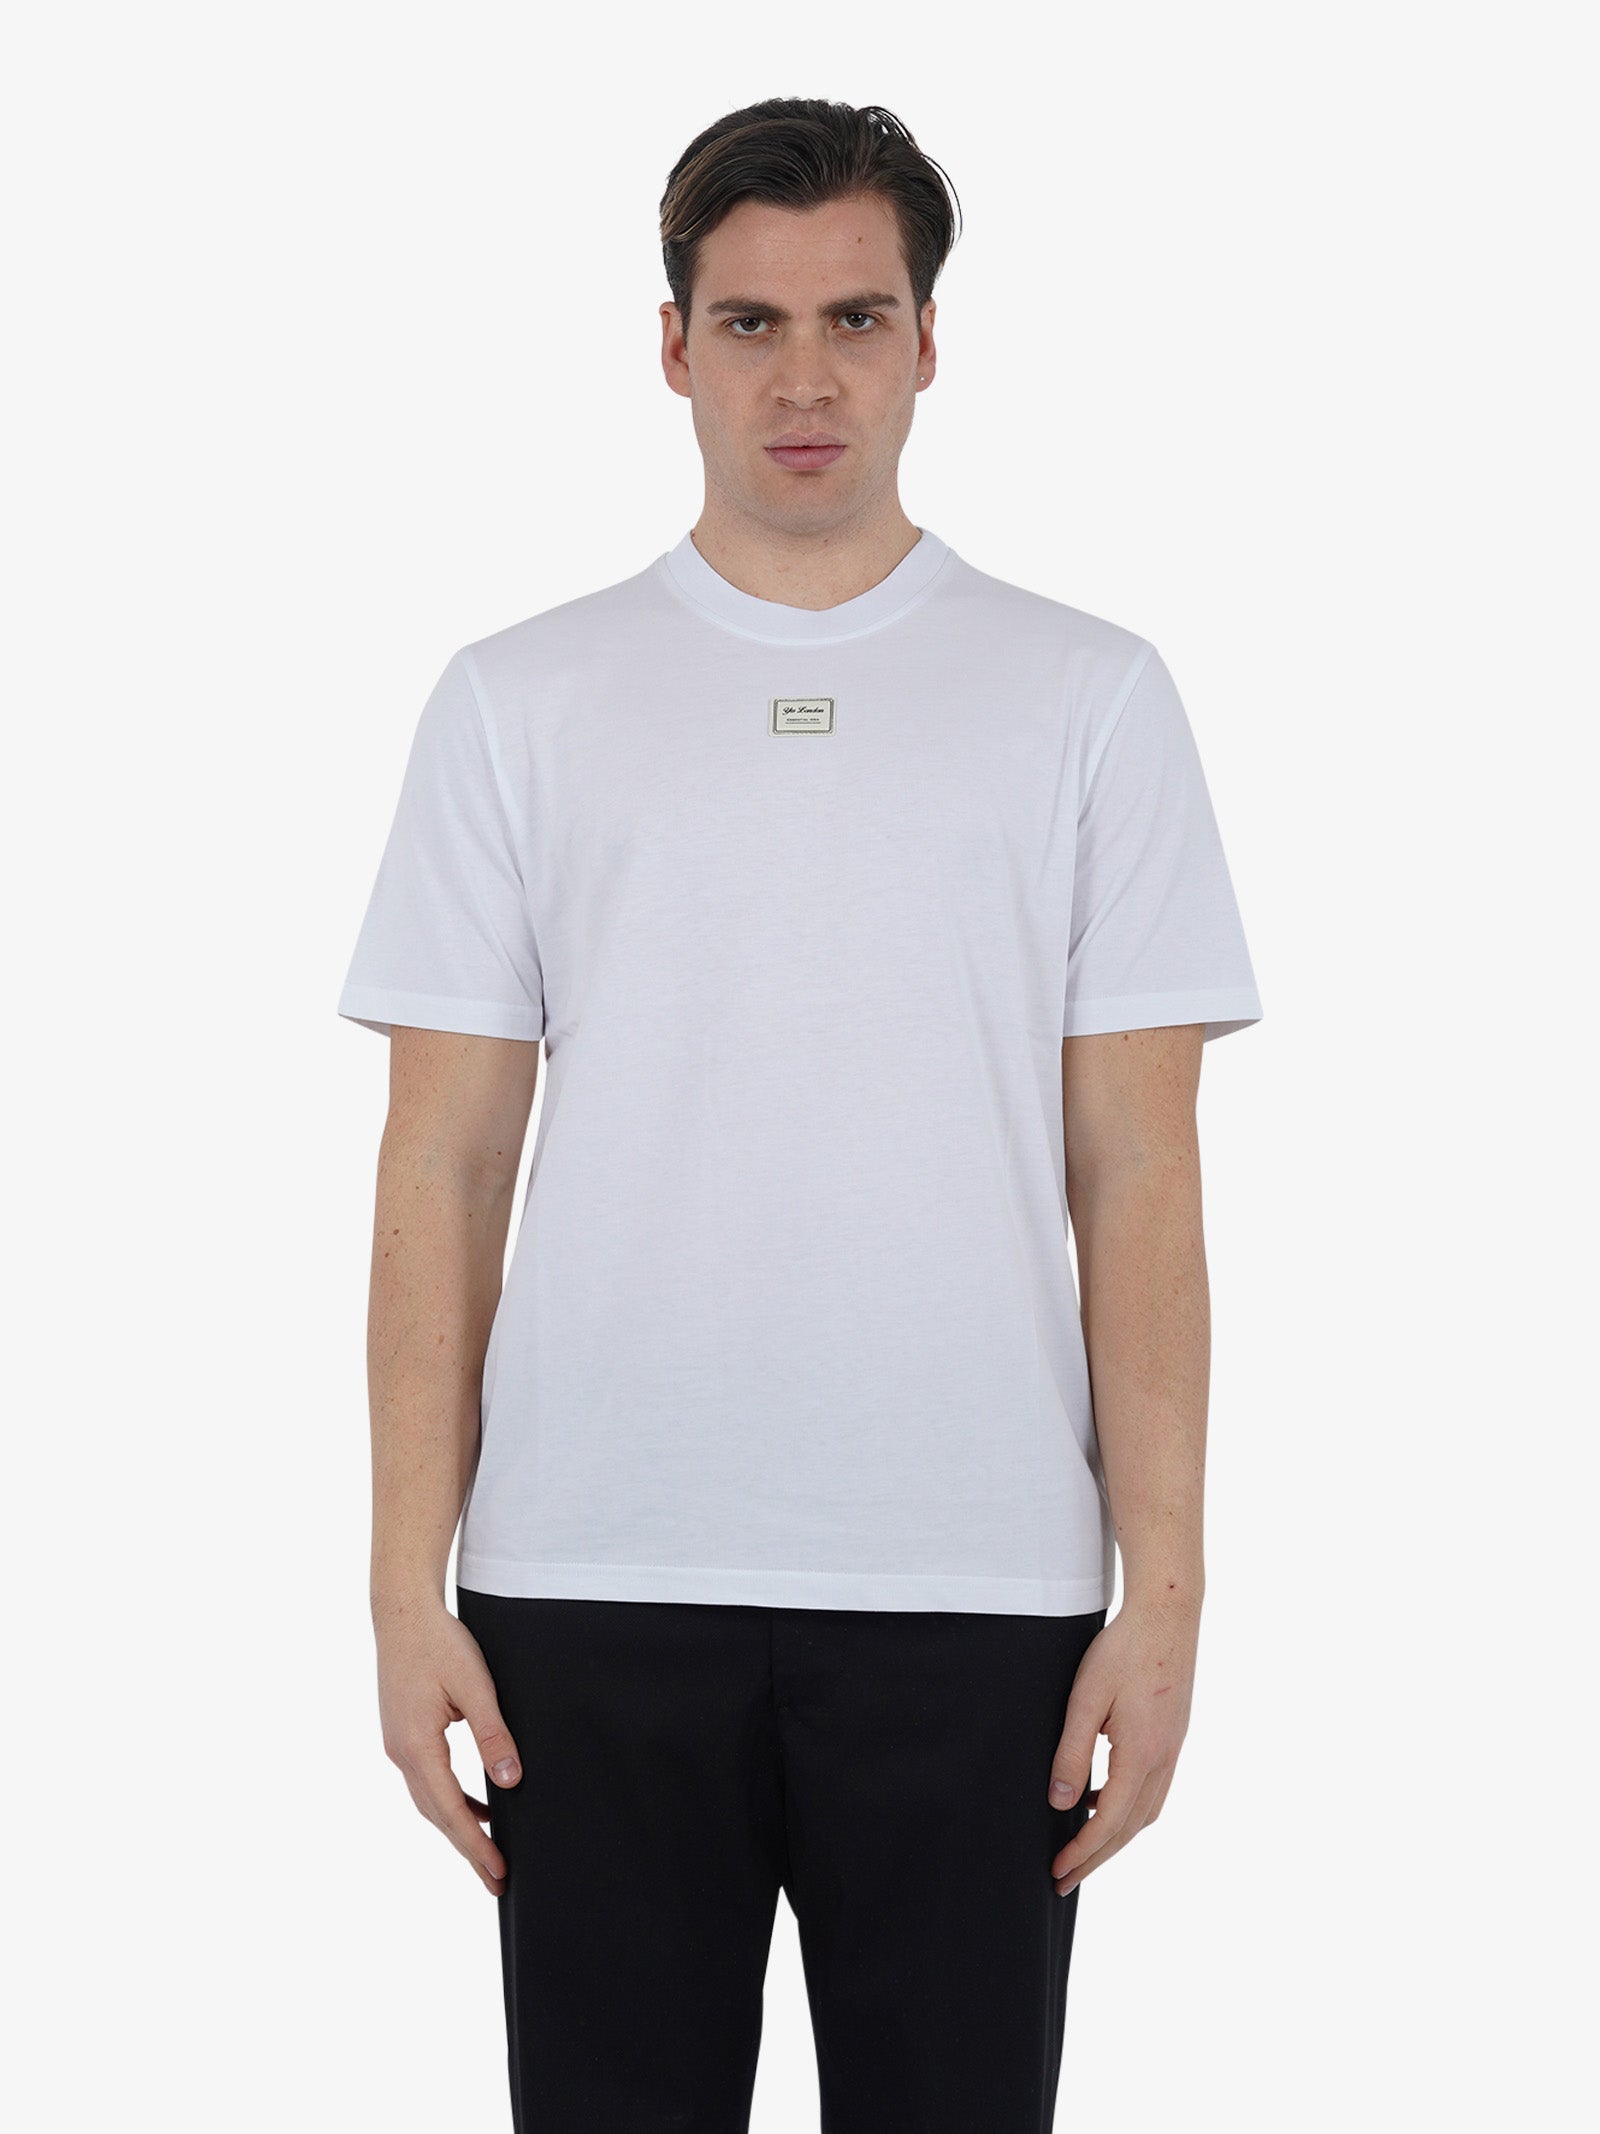 Men's Beige Cotton T-Shirt